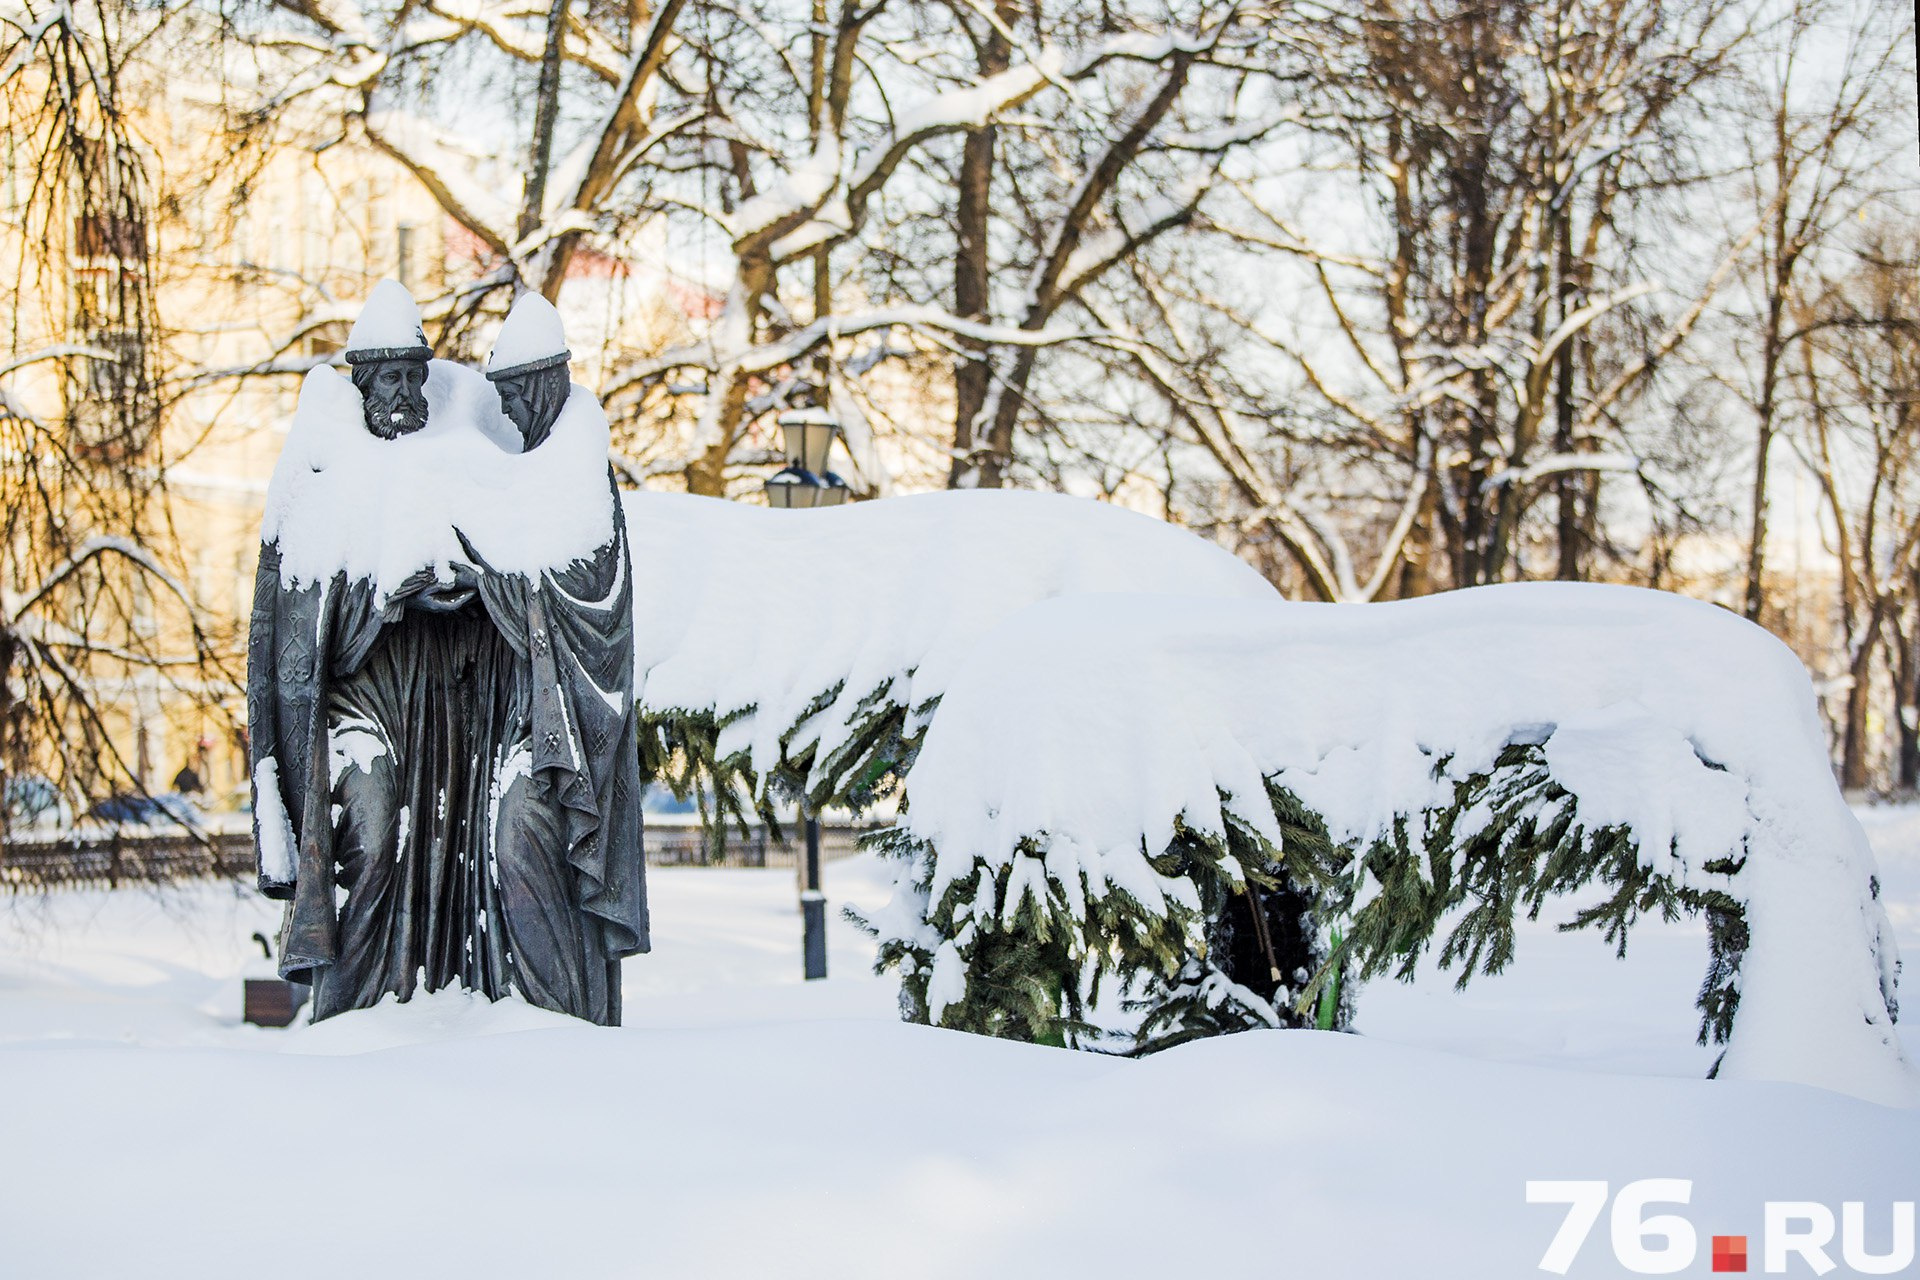 Петр и Феврония: с палантином можно устроить романтичную фотосессию в снежном городе